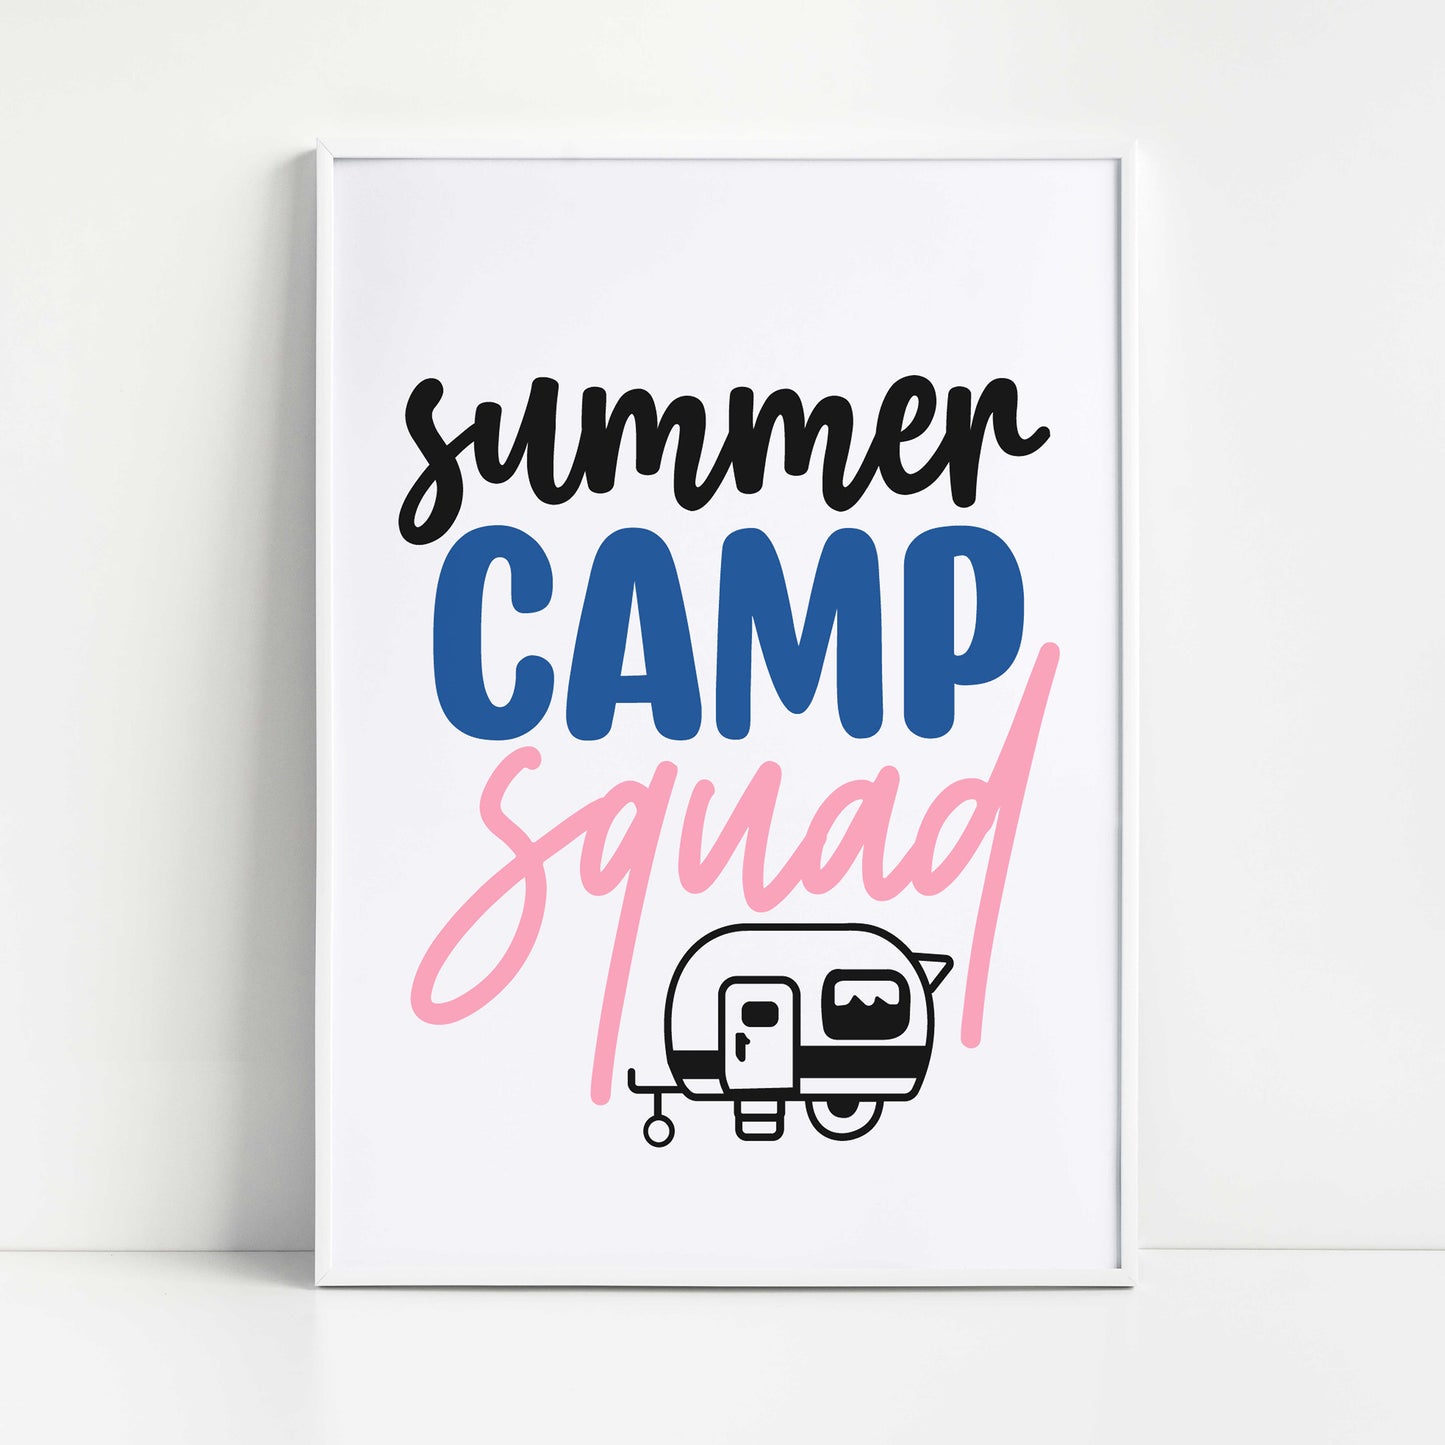 "Summer Camp Squad" Graphic